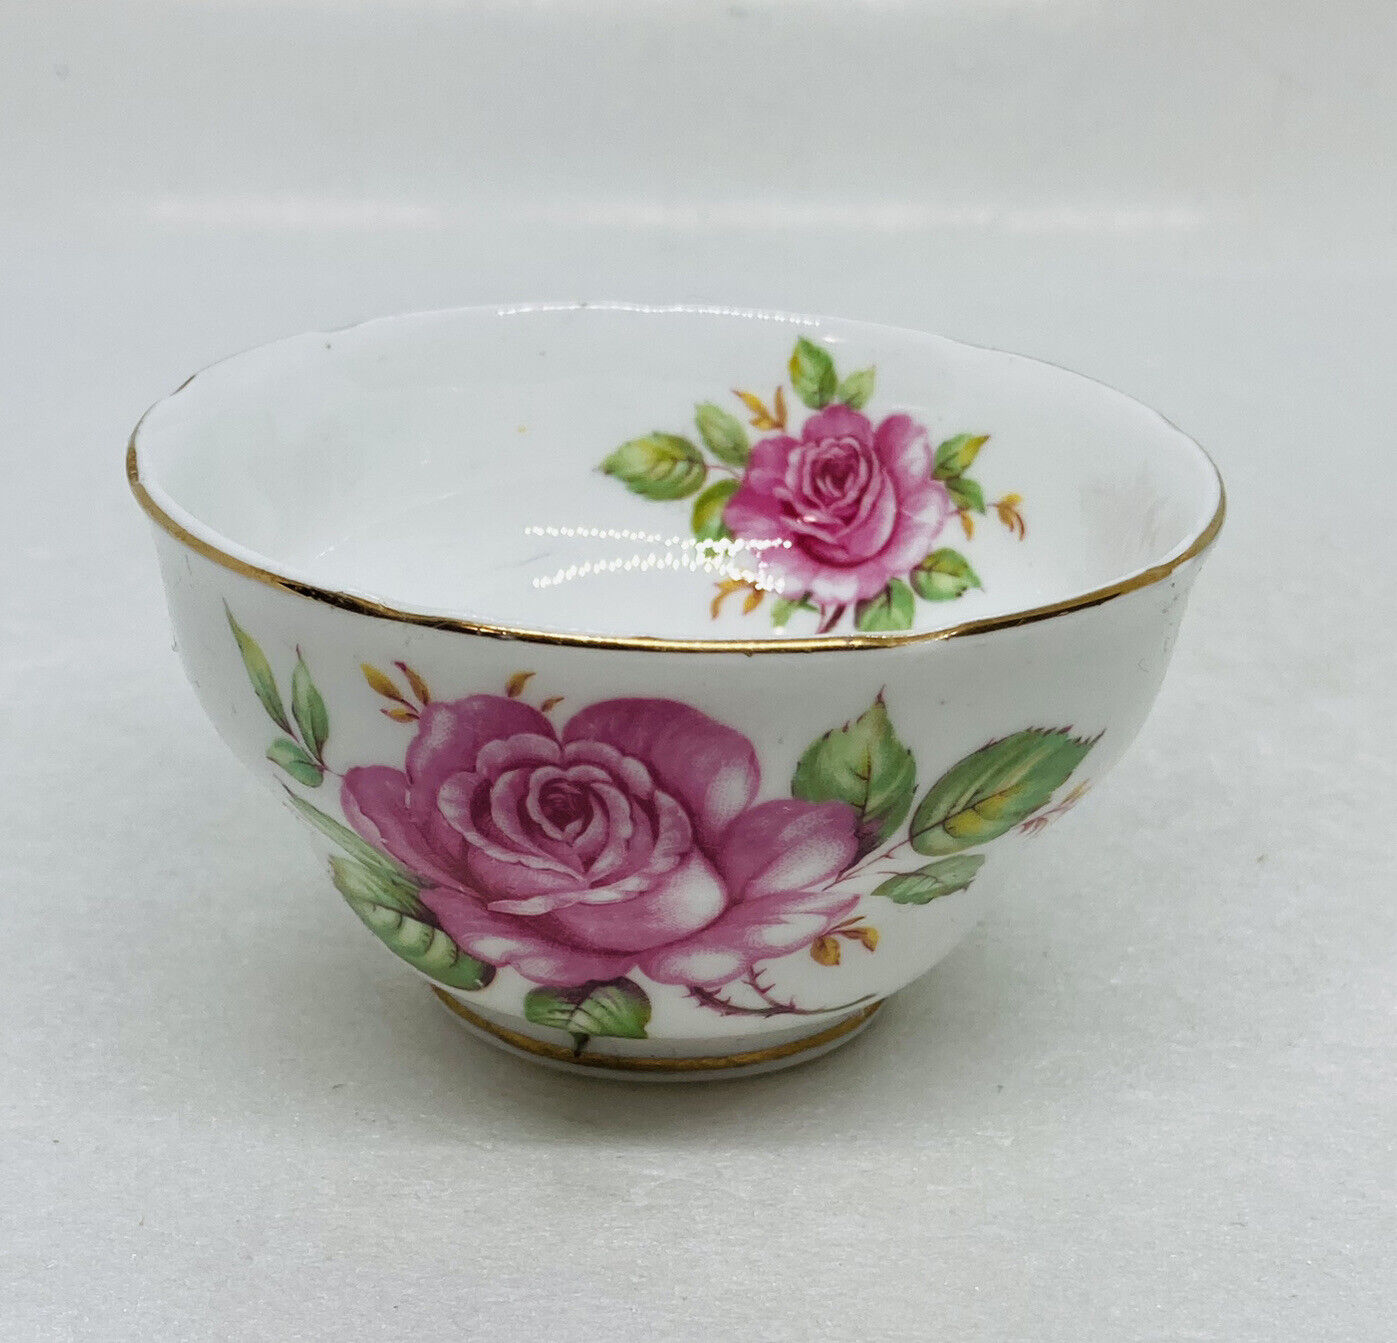 Vintage MELBA Bone China Porcelain Teacup Pink Roses Floral Art Decor England 1